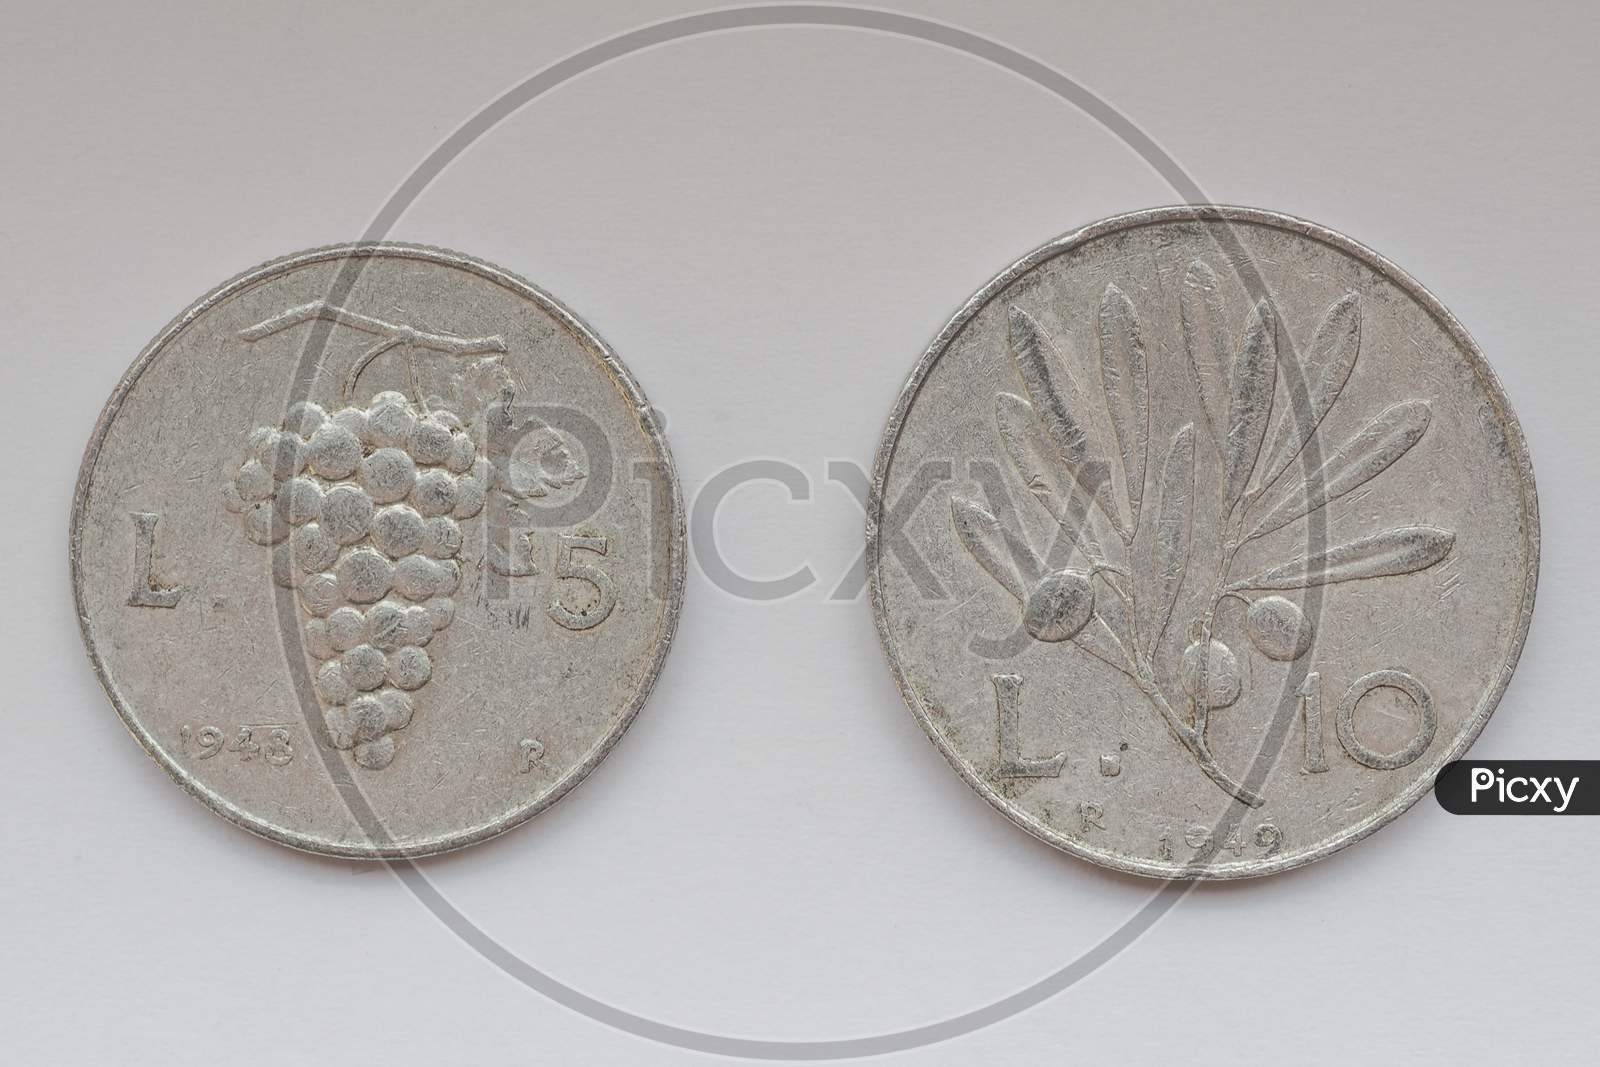 Old Italian Coins